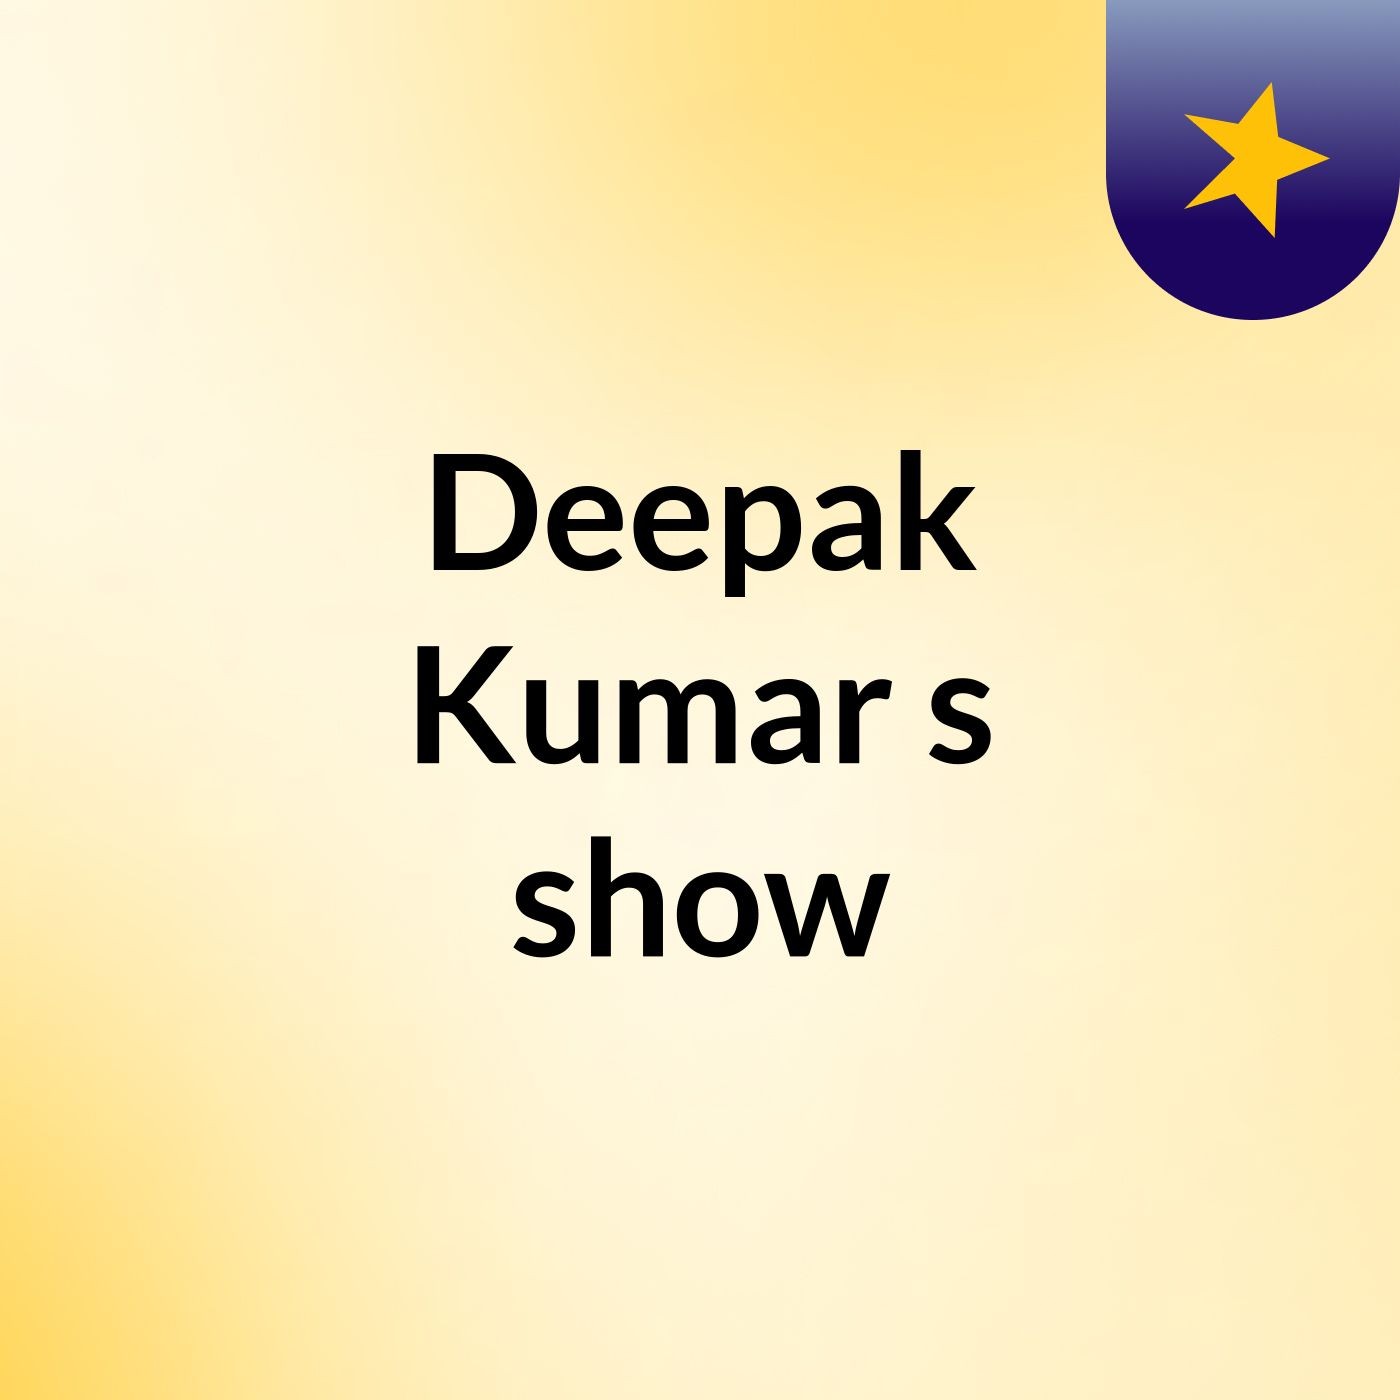 Deepak Kumar's show